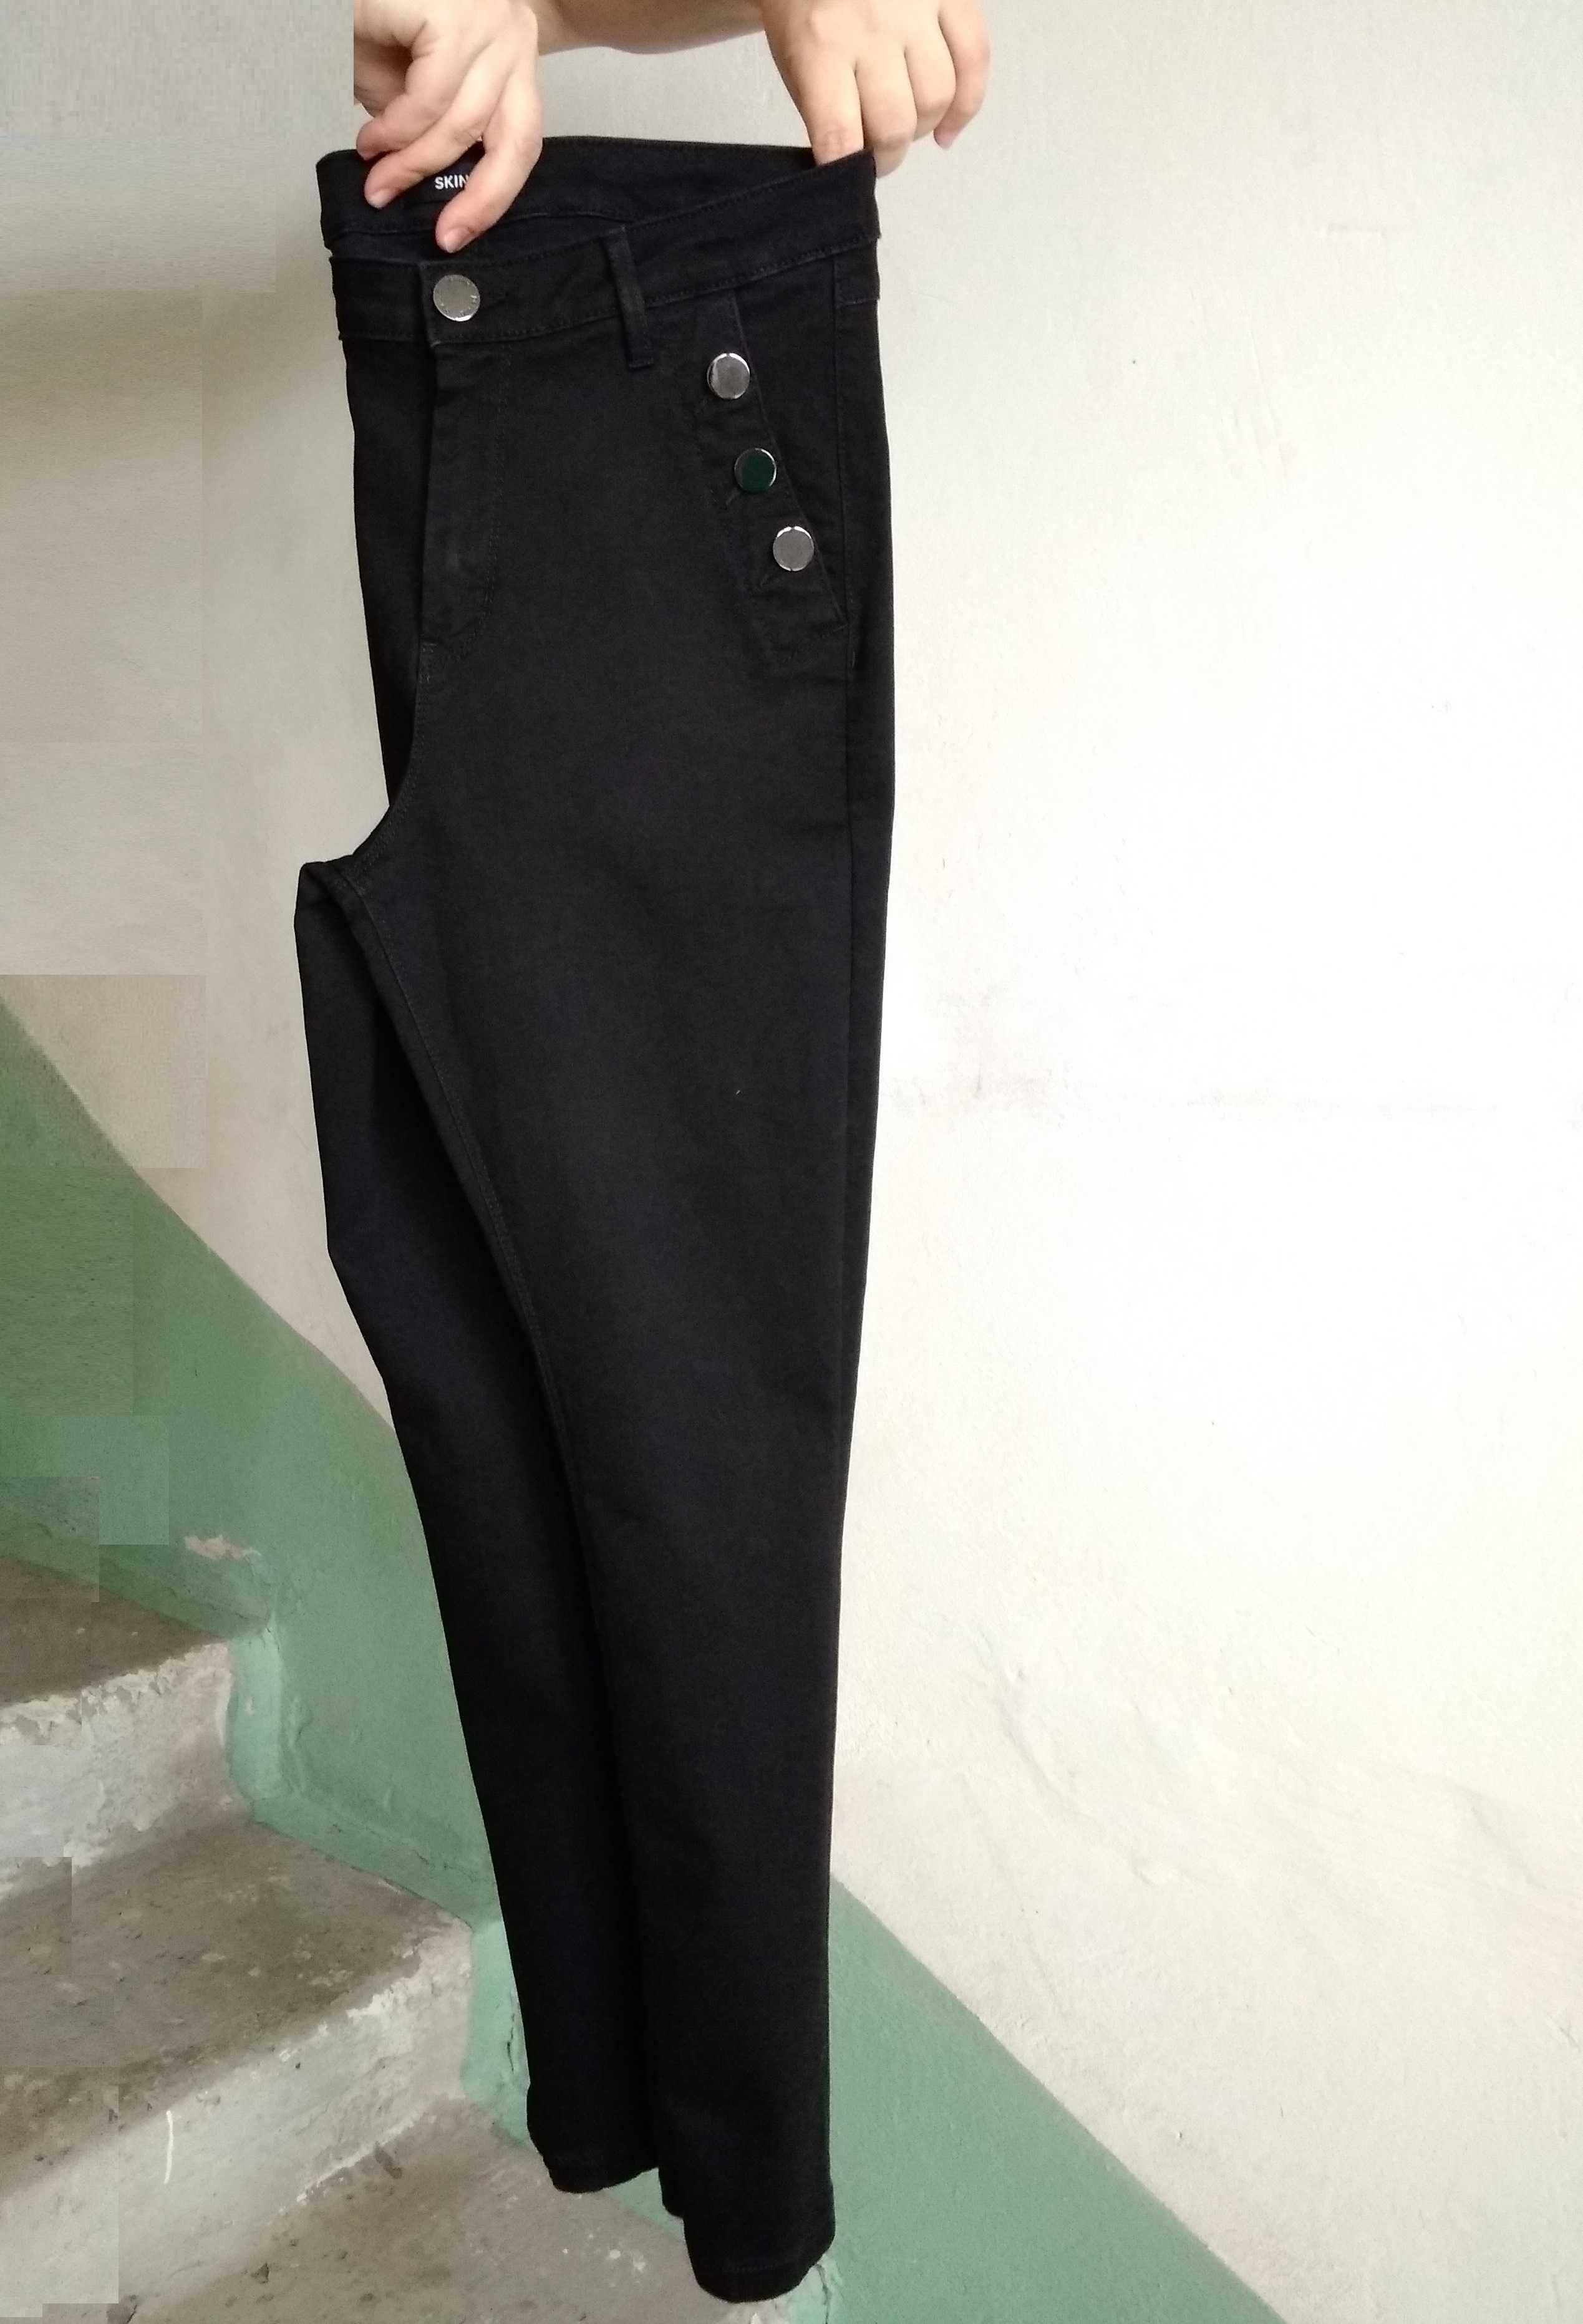 р 10 / 44-46 Стильные базовые черные узкие джинсы штаны брюки скинни